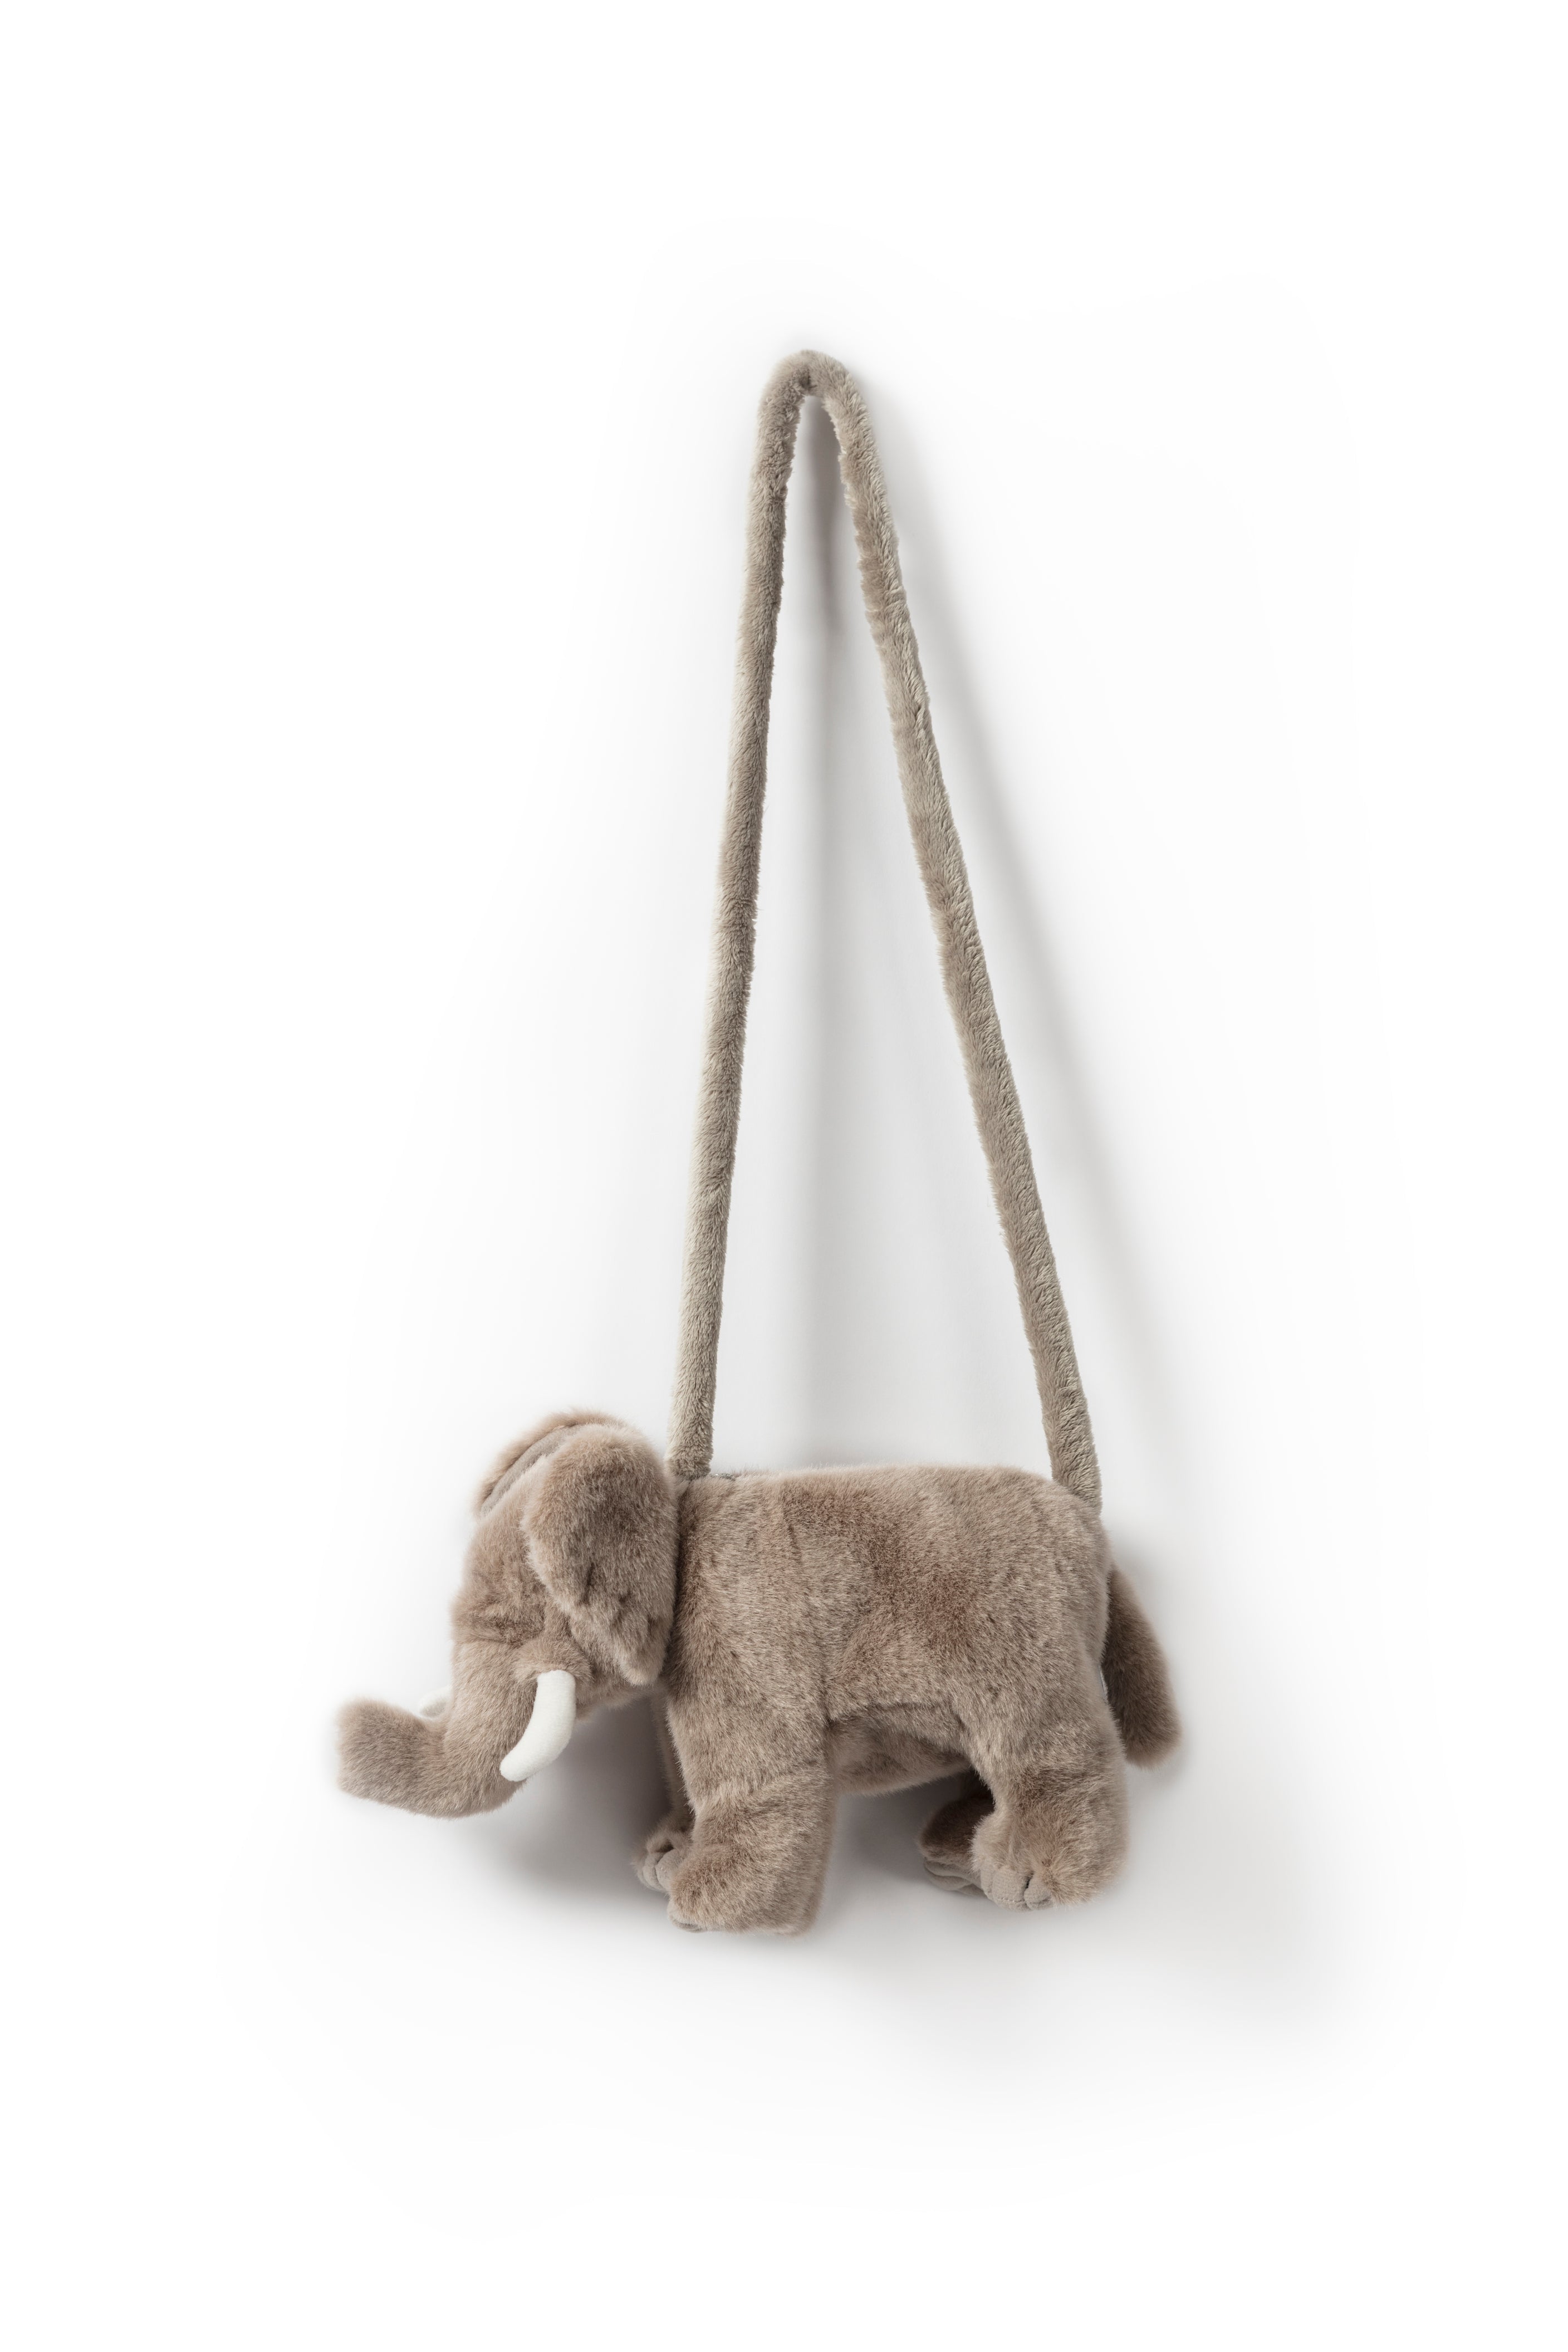 WILD&SOFT Die Zuckersüße Elefanten-Handtasche 🐘💖 - Dein Kinderschatz' neuer bester Freund!